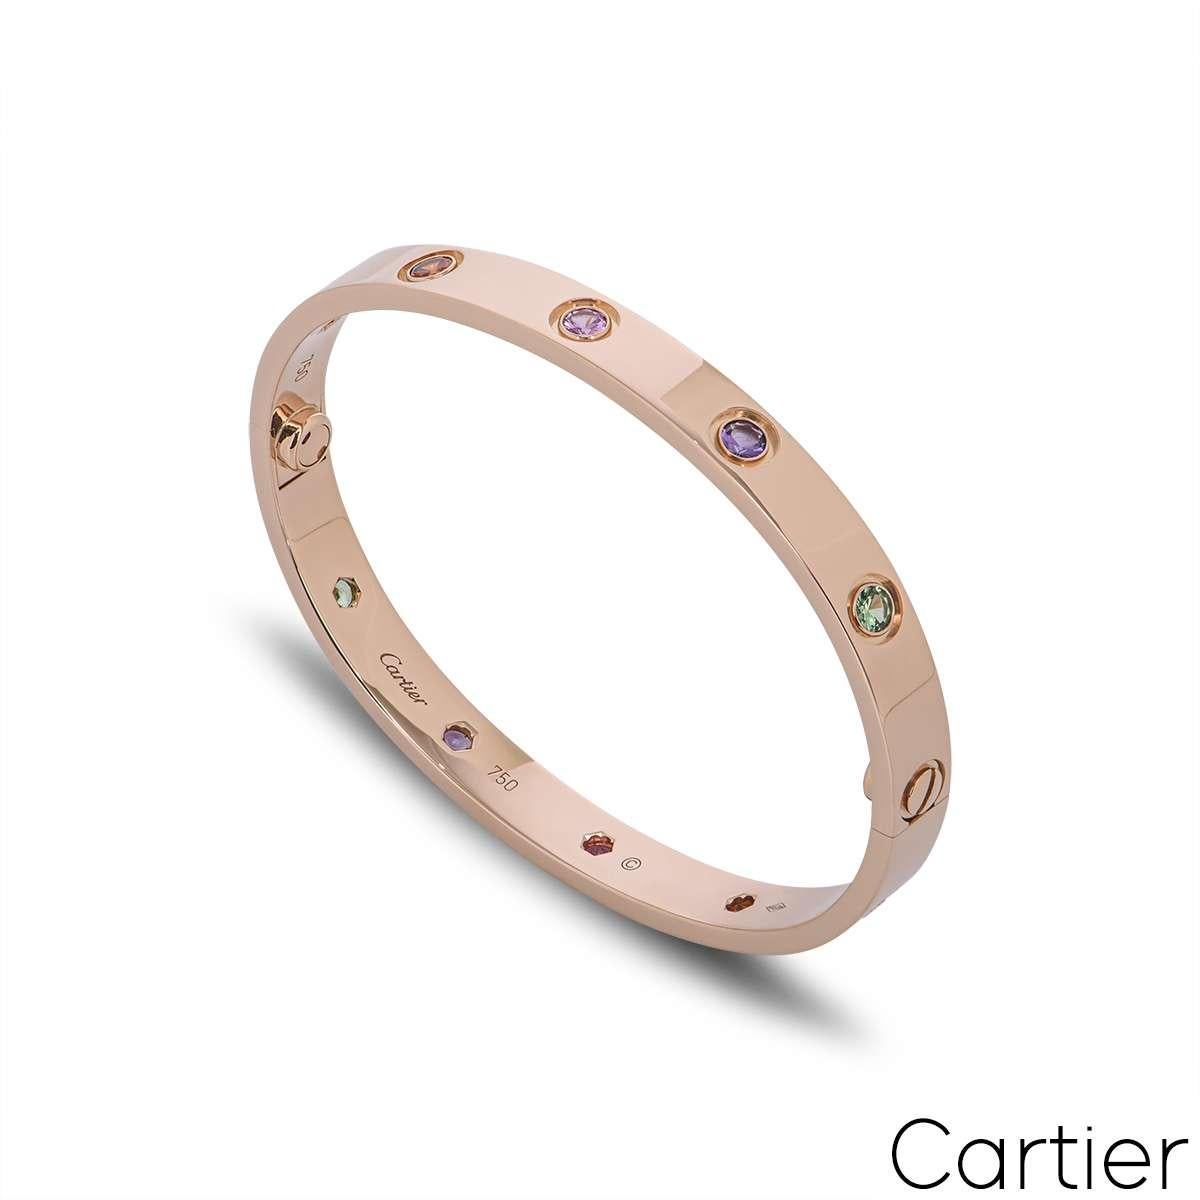 Un bracelet en or rose 18 carats de Cartier, de la collection Love. Serti de 10 pierres de couleur, dont des saphirs roses et jaunes, des grenats verts et orange et des améthystes. Ce bracelet est doté du nouveau système de vis et fait une taille 16